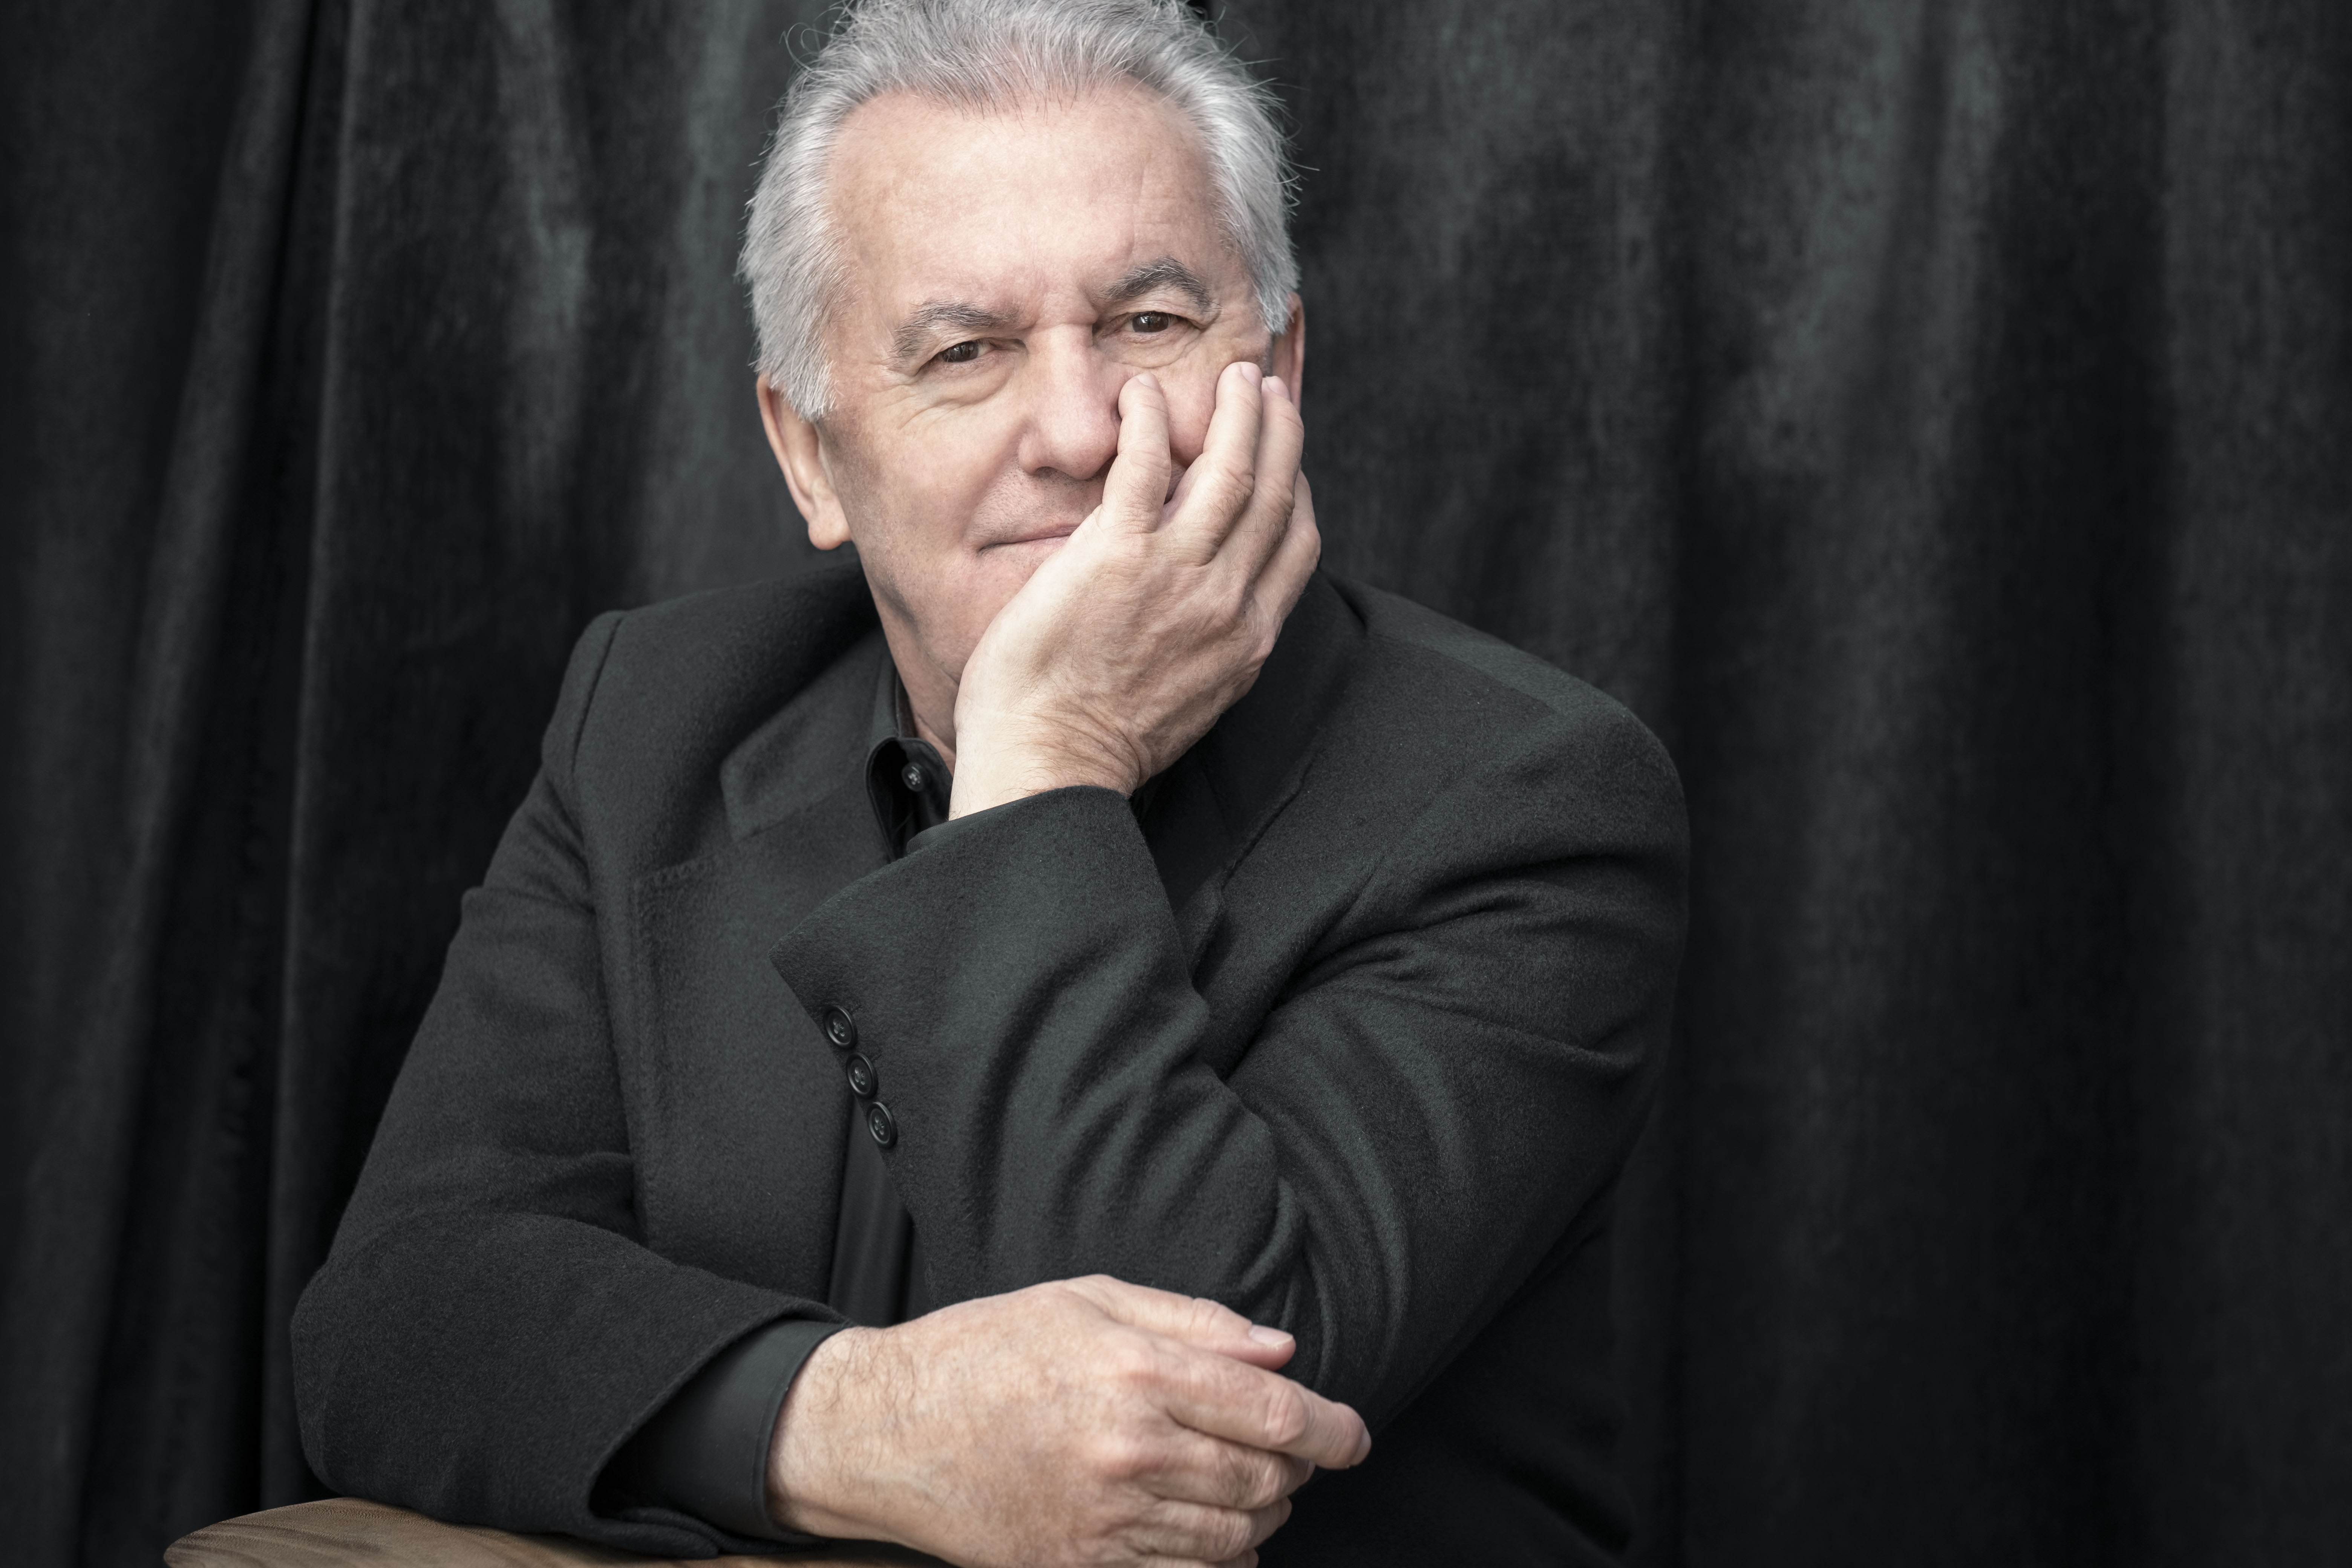 Víctor Manuel celebra els 75 anys amb un concert al Liceu de Barcelona